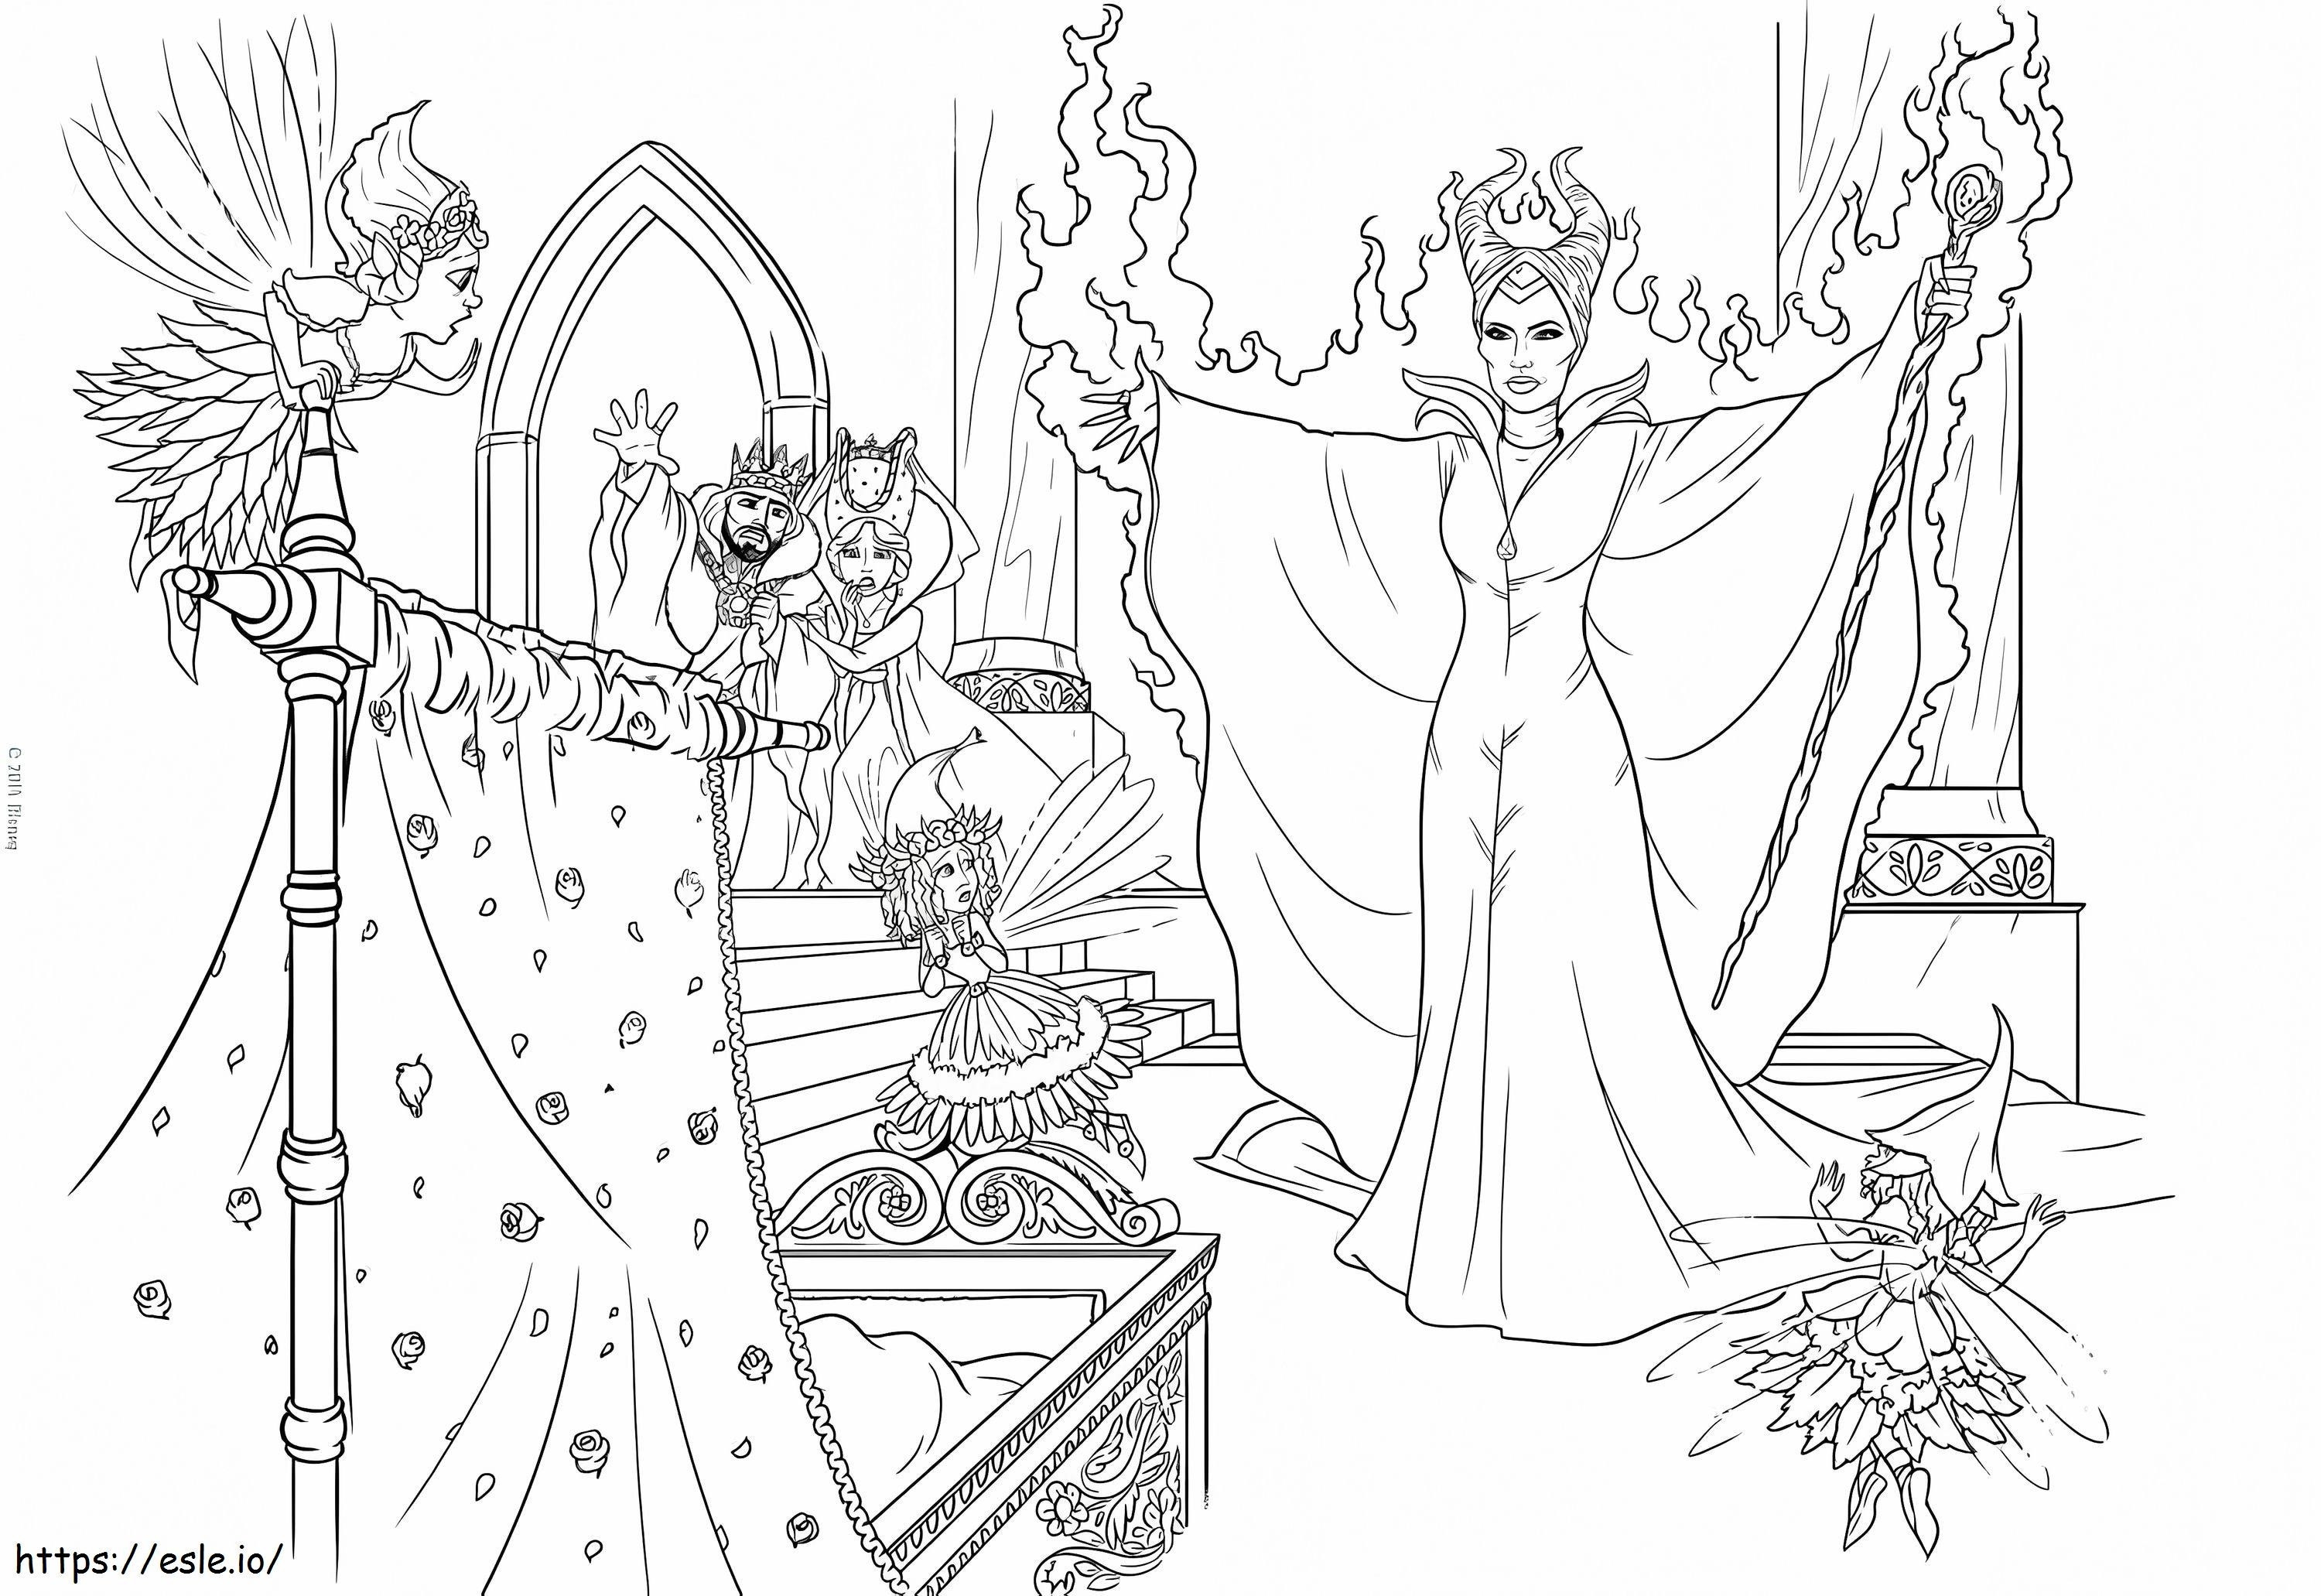 Maleficent przeklina Aurorę kolorowanka